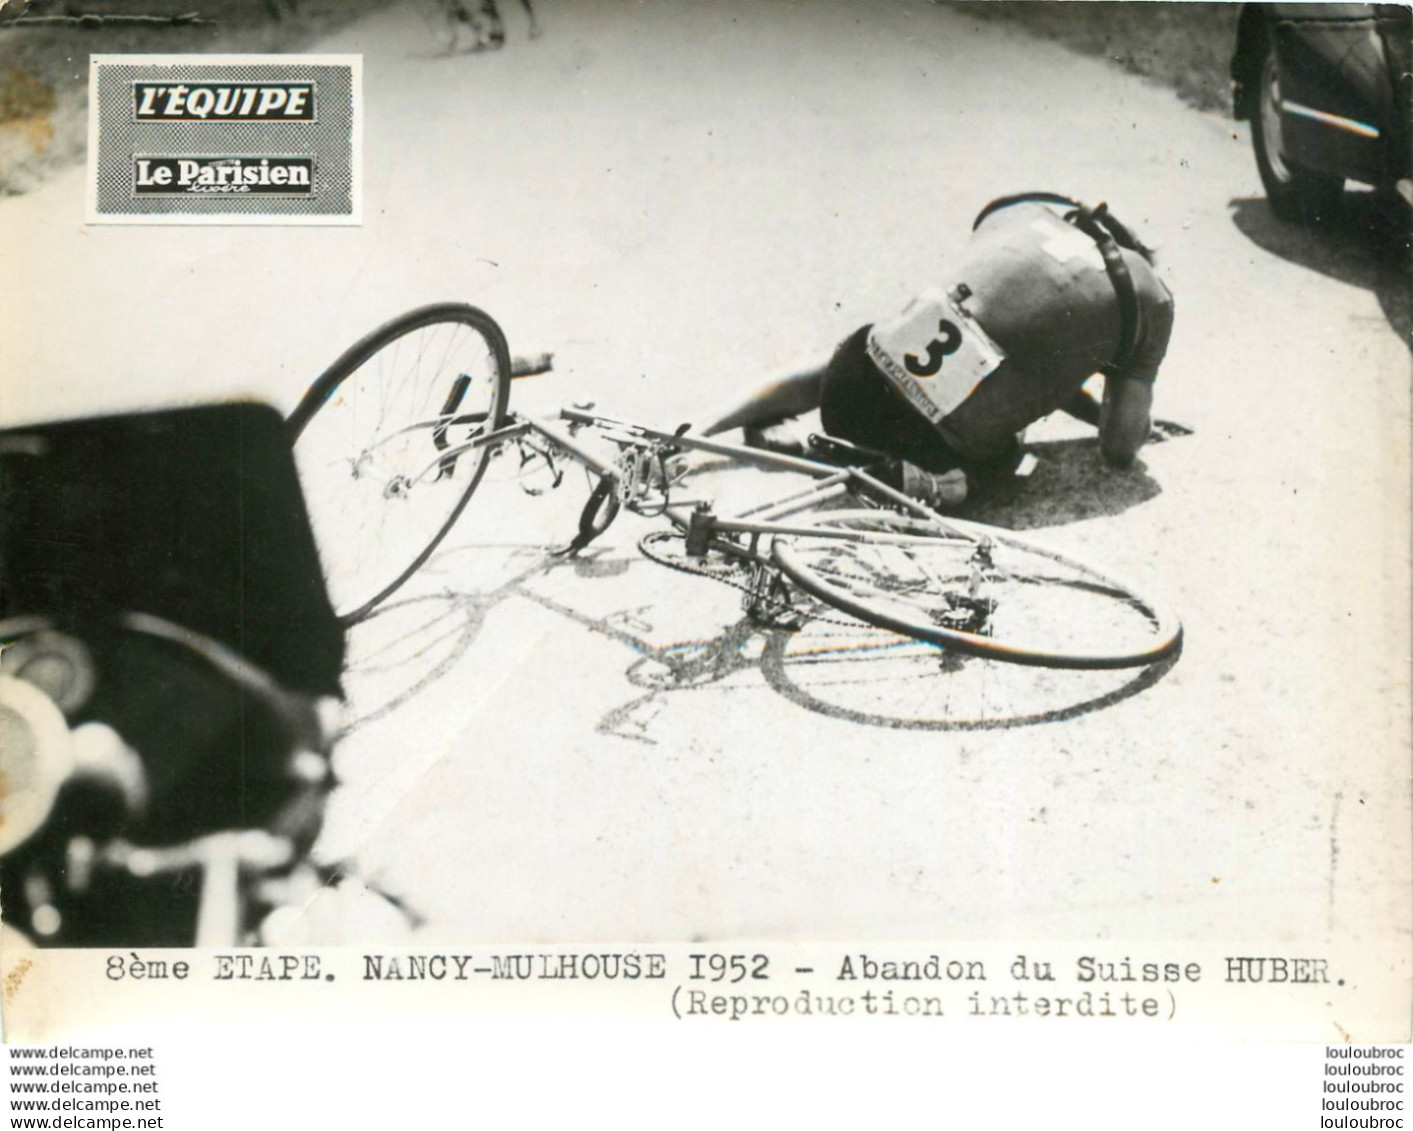 TOUR DE FRANCE 1952 ABANDON DU SUISSE HUBER 8ème ETAPE PHOTO DE PRESSE ORIGINALE ARGENTIQUE  20X15CM EQUIPE  LE PARISIEN - Deportes